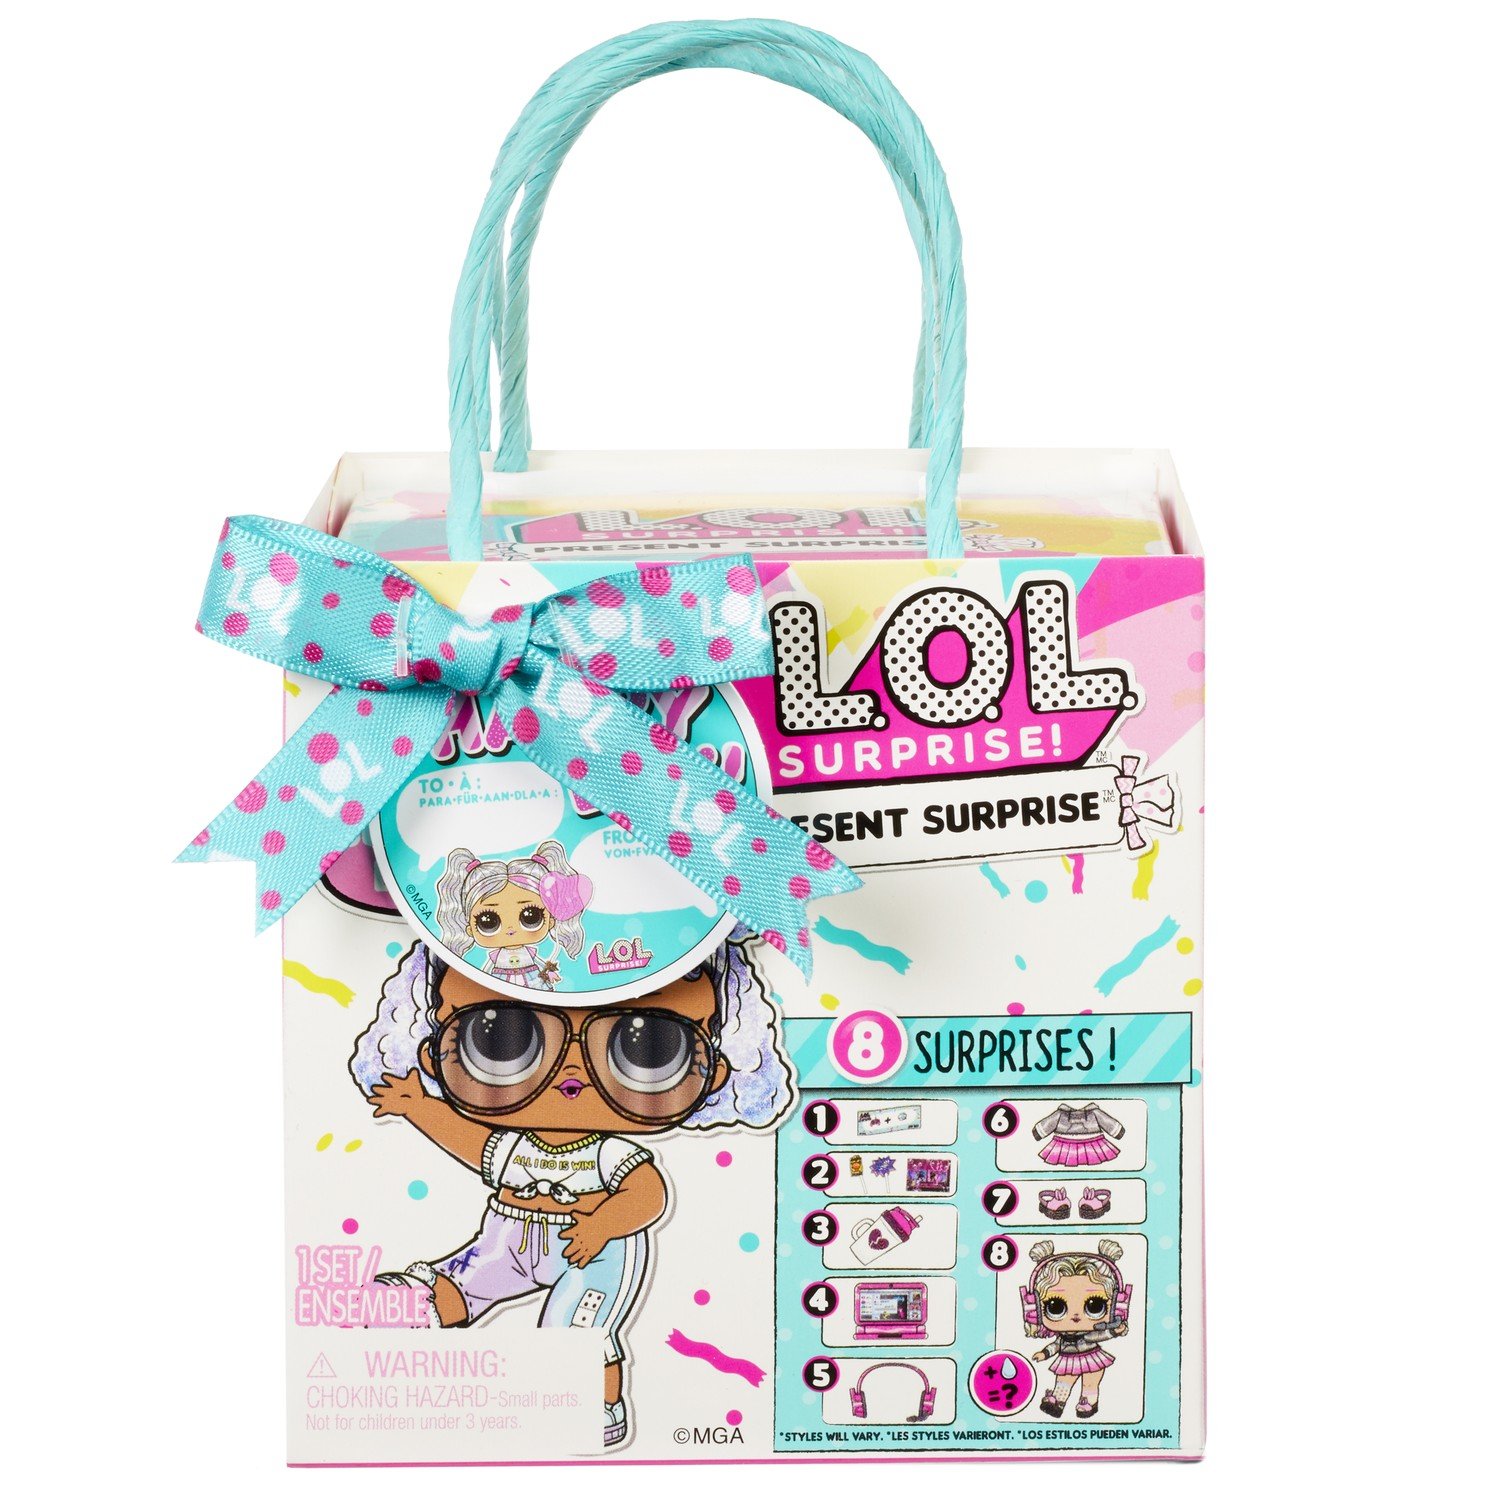 Кукла LOL Present Surprise Tots в непрозрачной упаковке (Сюрприз) 576396EUC